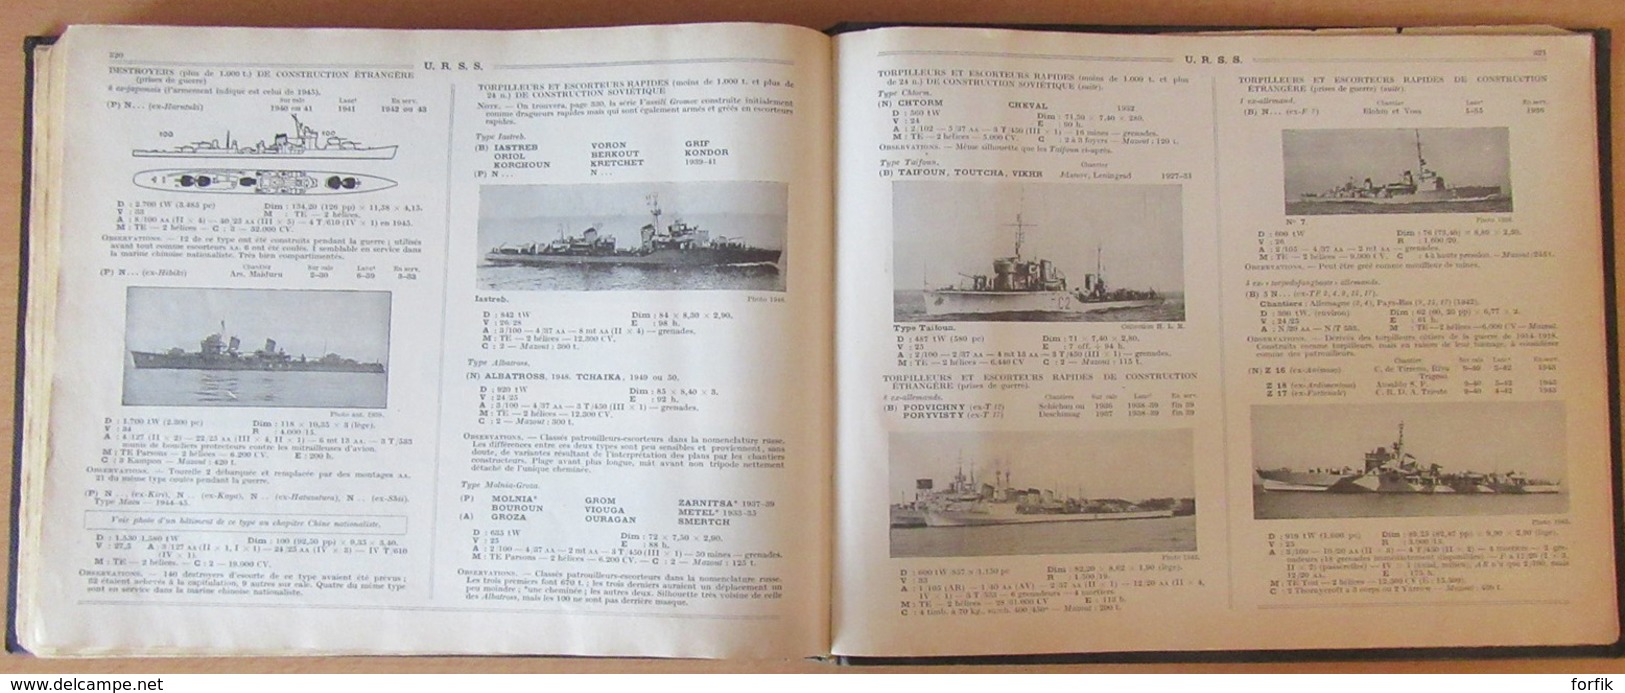 LE MASSON - Livre Les Flottes de Combat 1954 - Navires militaires Français et mondiaux dont USA, URSS, etc - Bon état